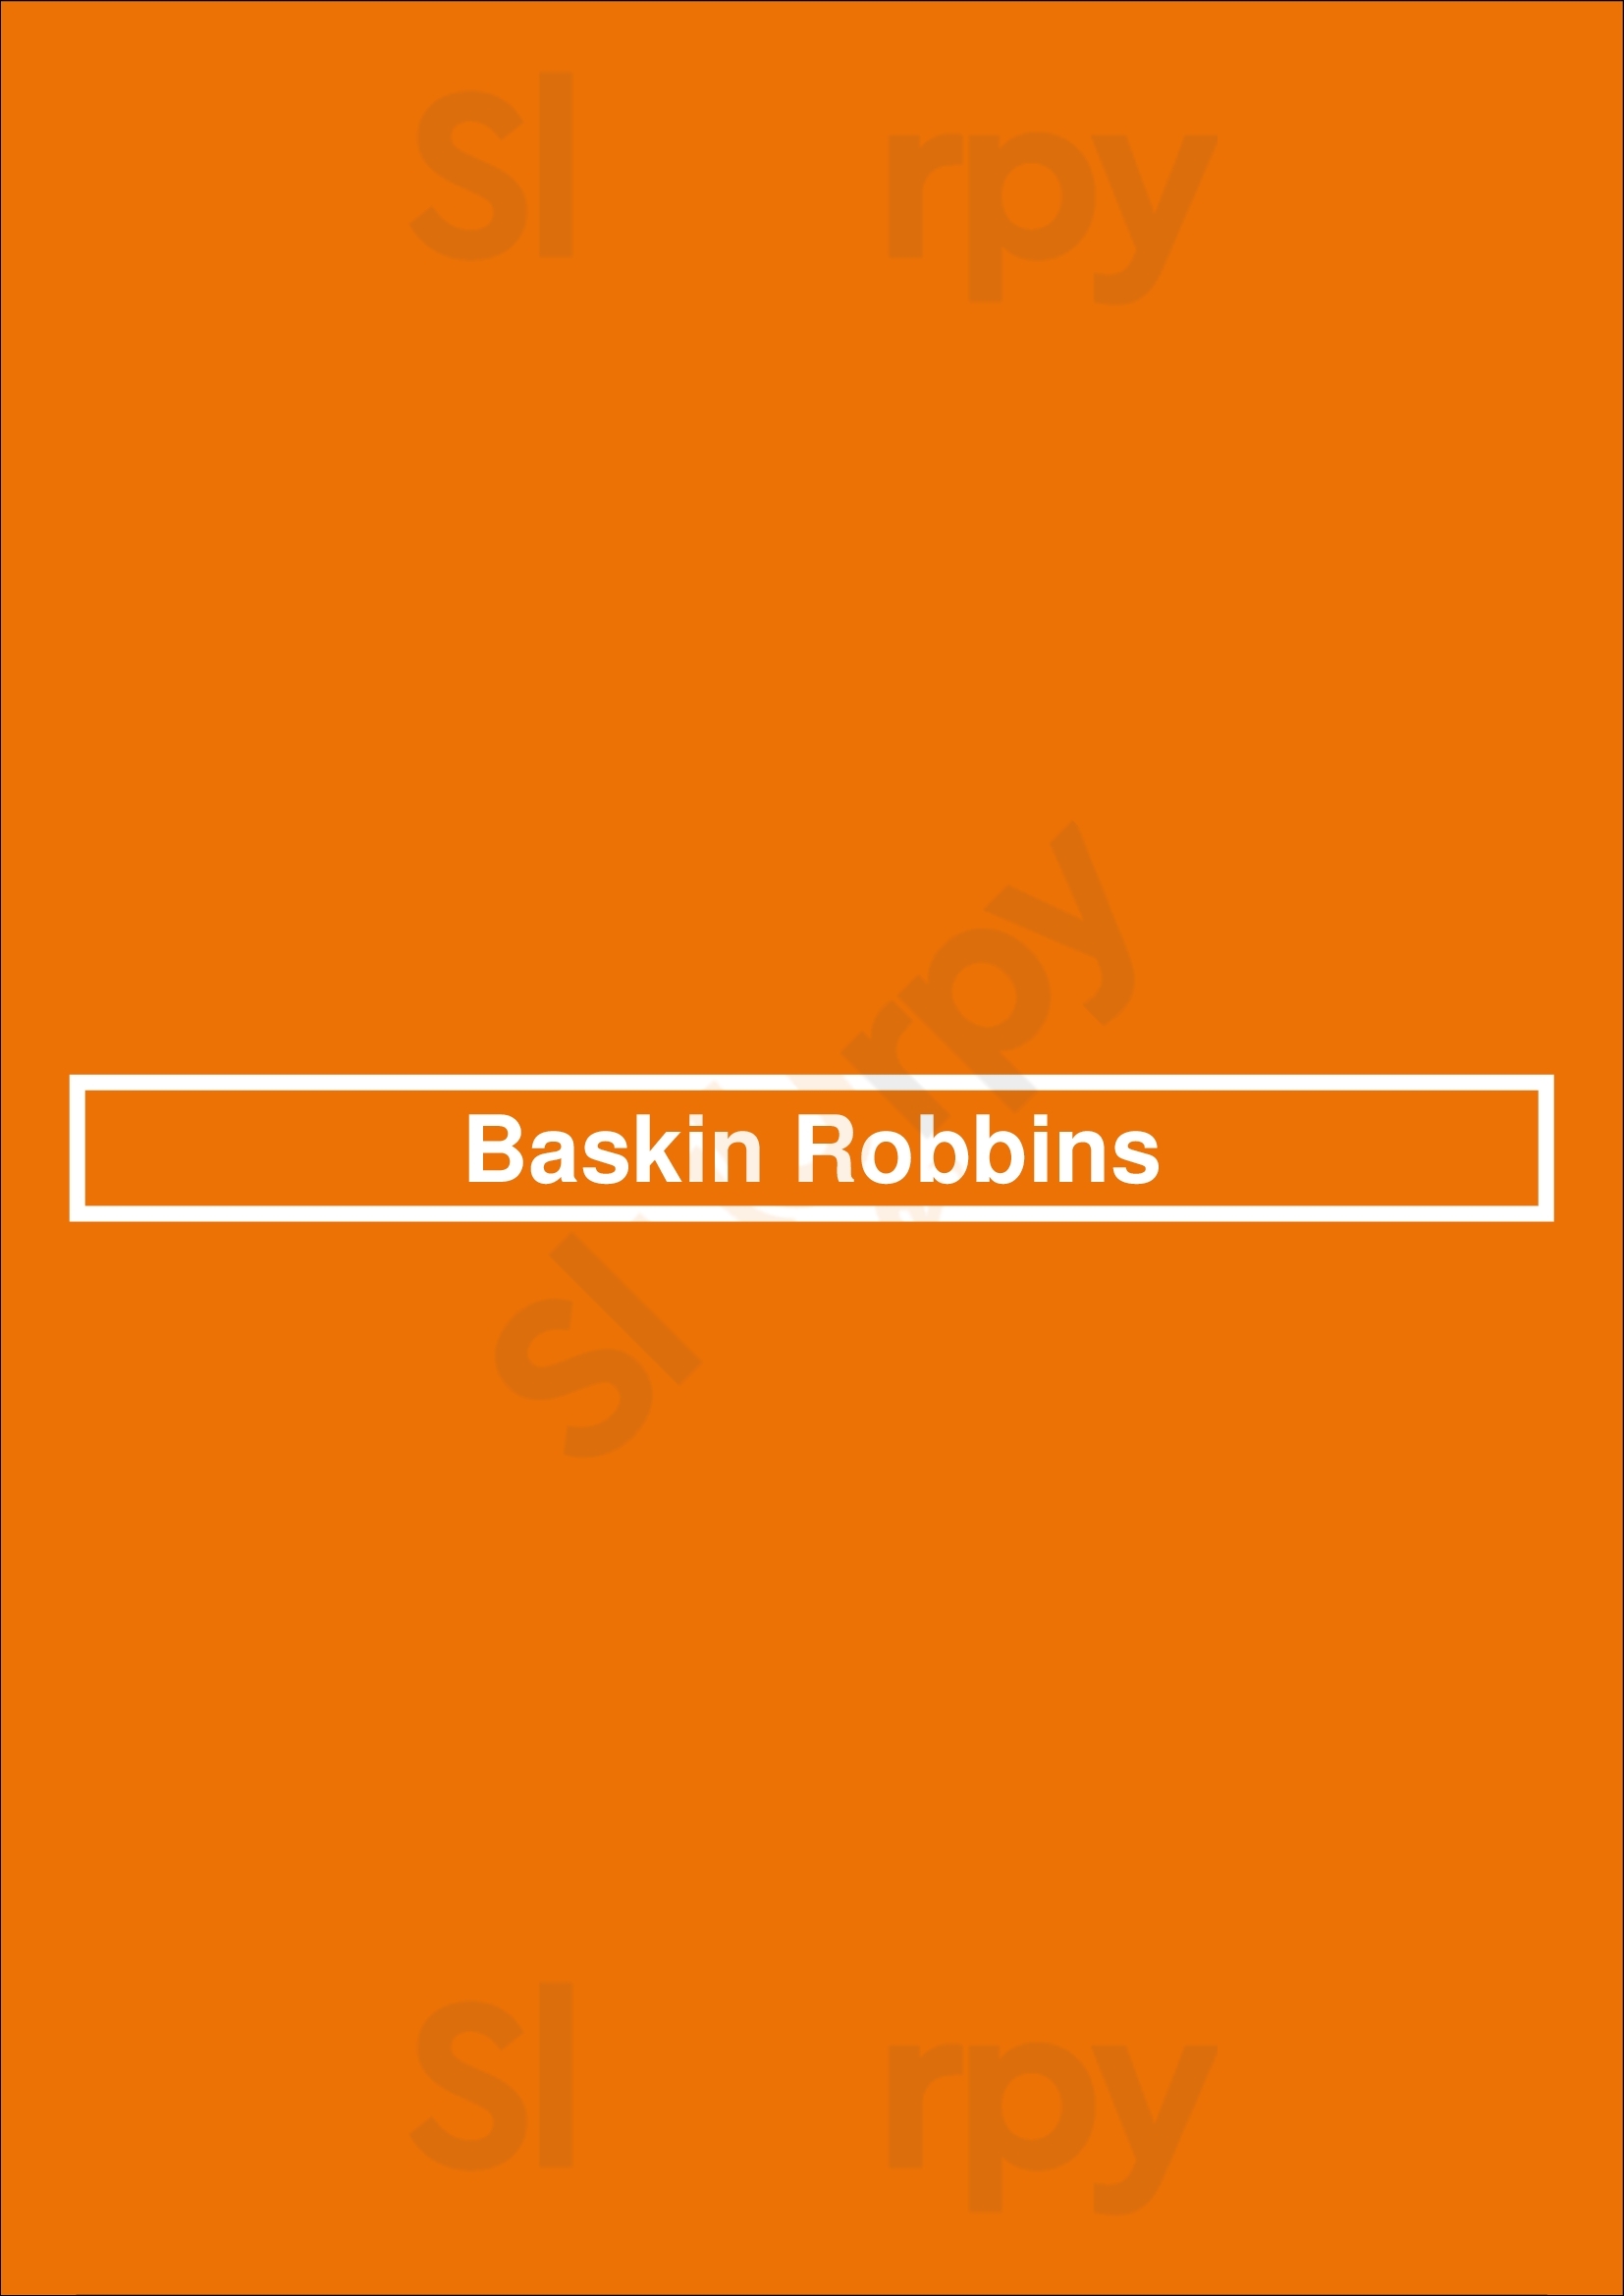 Baskin-robbins Salem Menu - 1